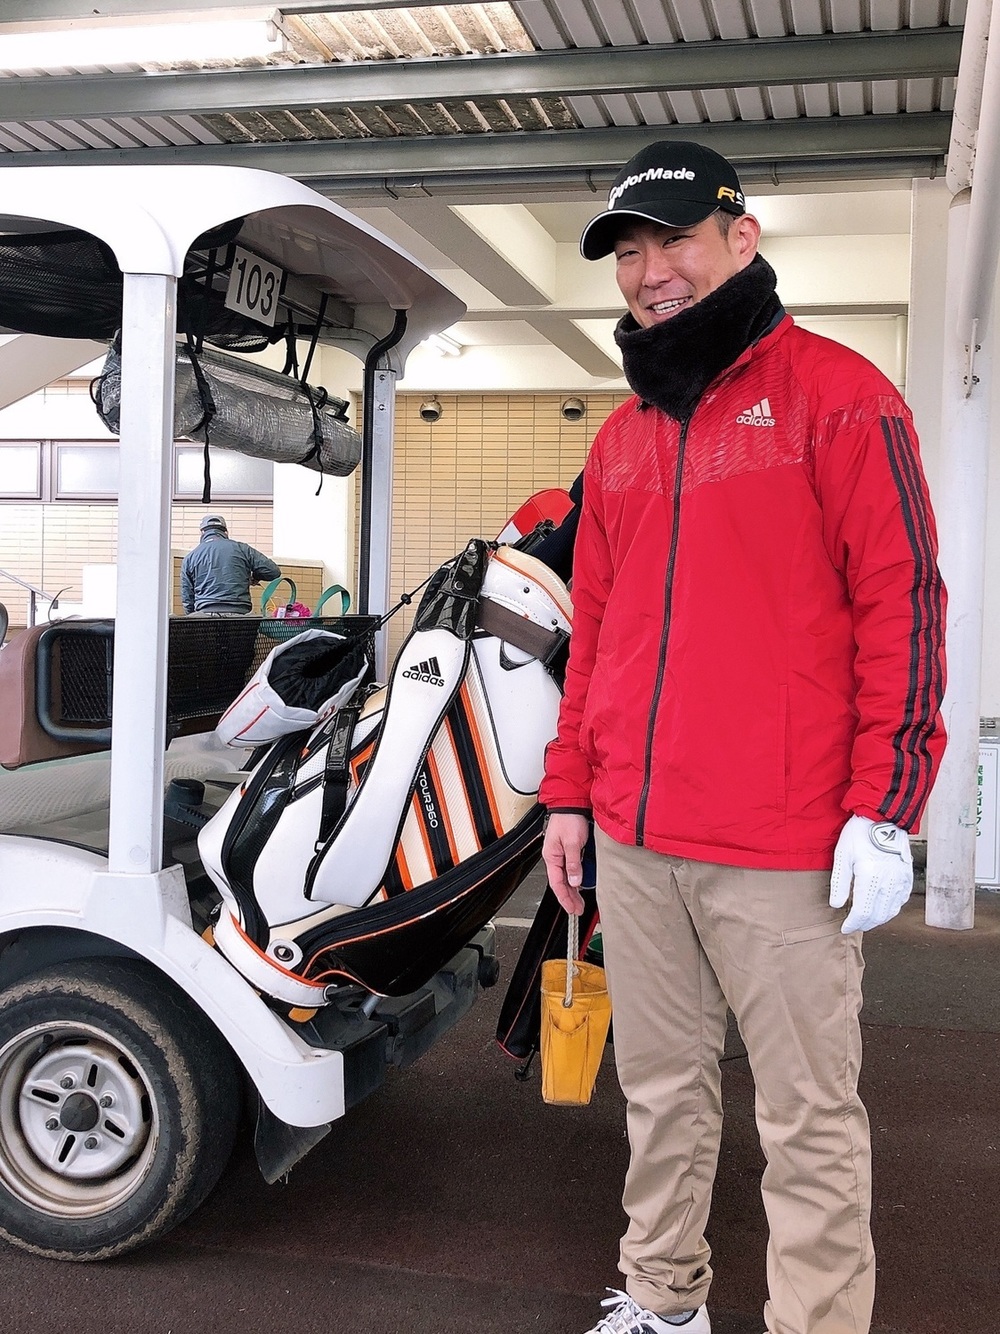 メンズゴルフウェアの冬の防寒対策9つ おしゃれで暖かい服装も紹介 ココゴルフ